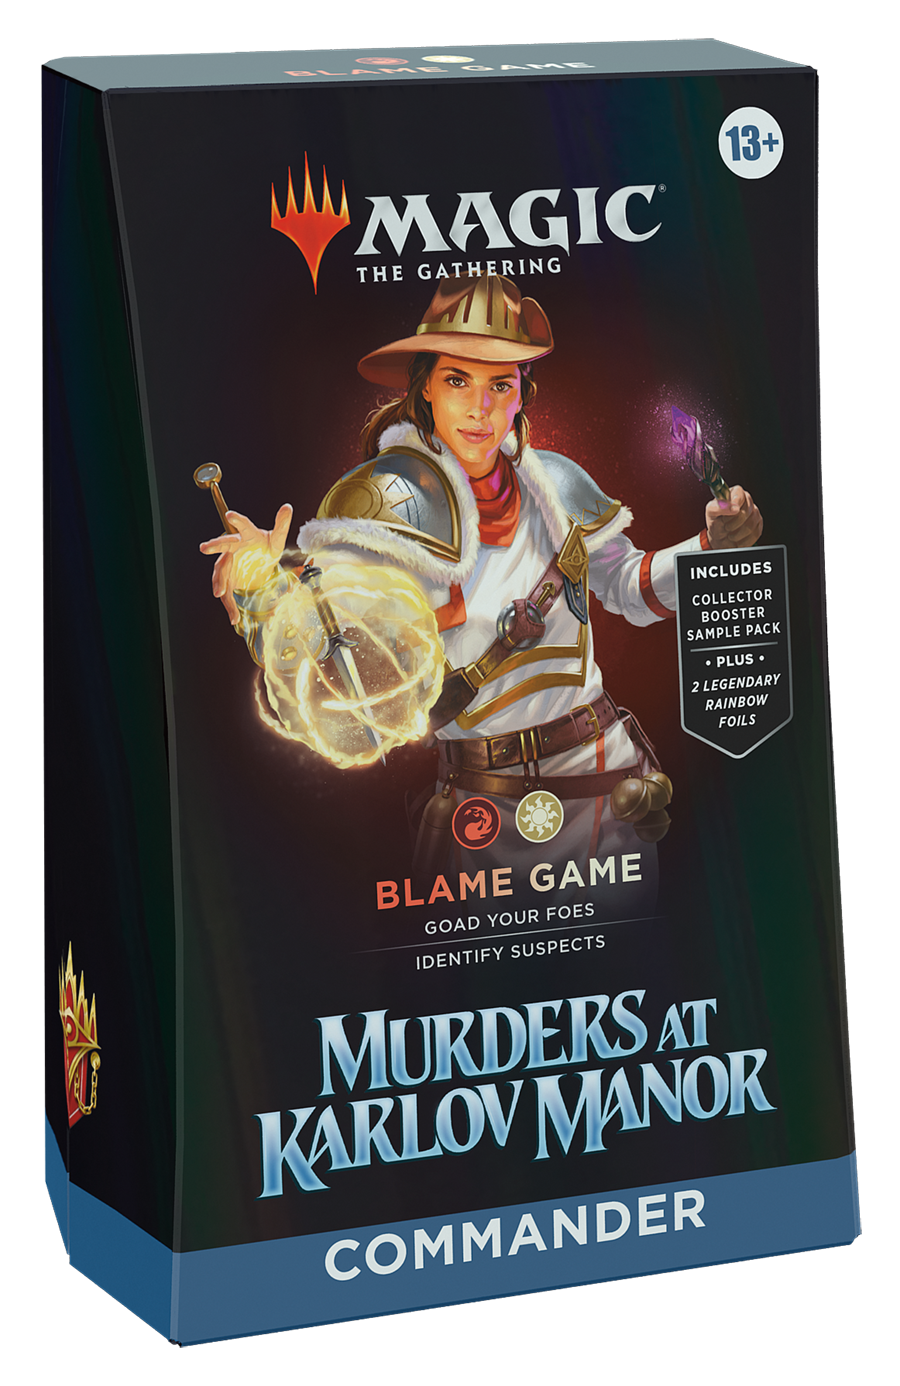 COMMANDER MURDERS AT KARLOV MANOR BLAME GAME (INGLES)